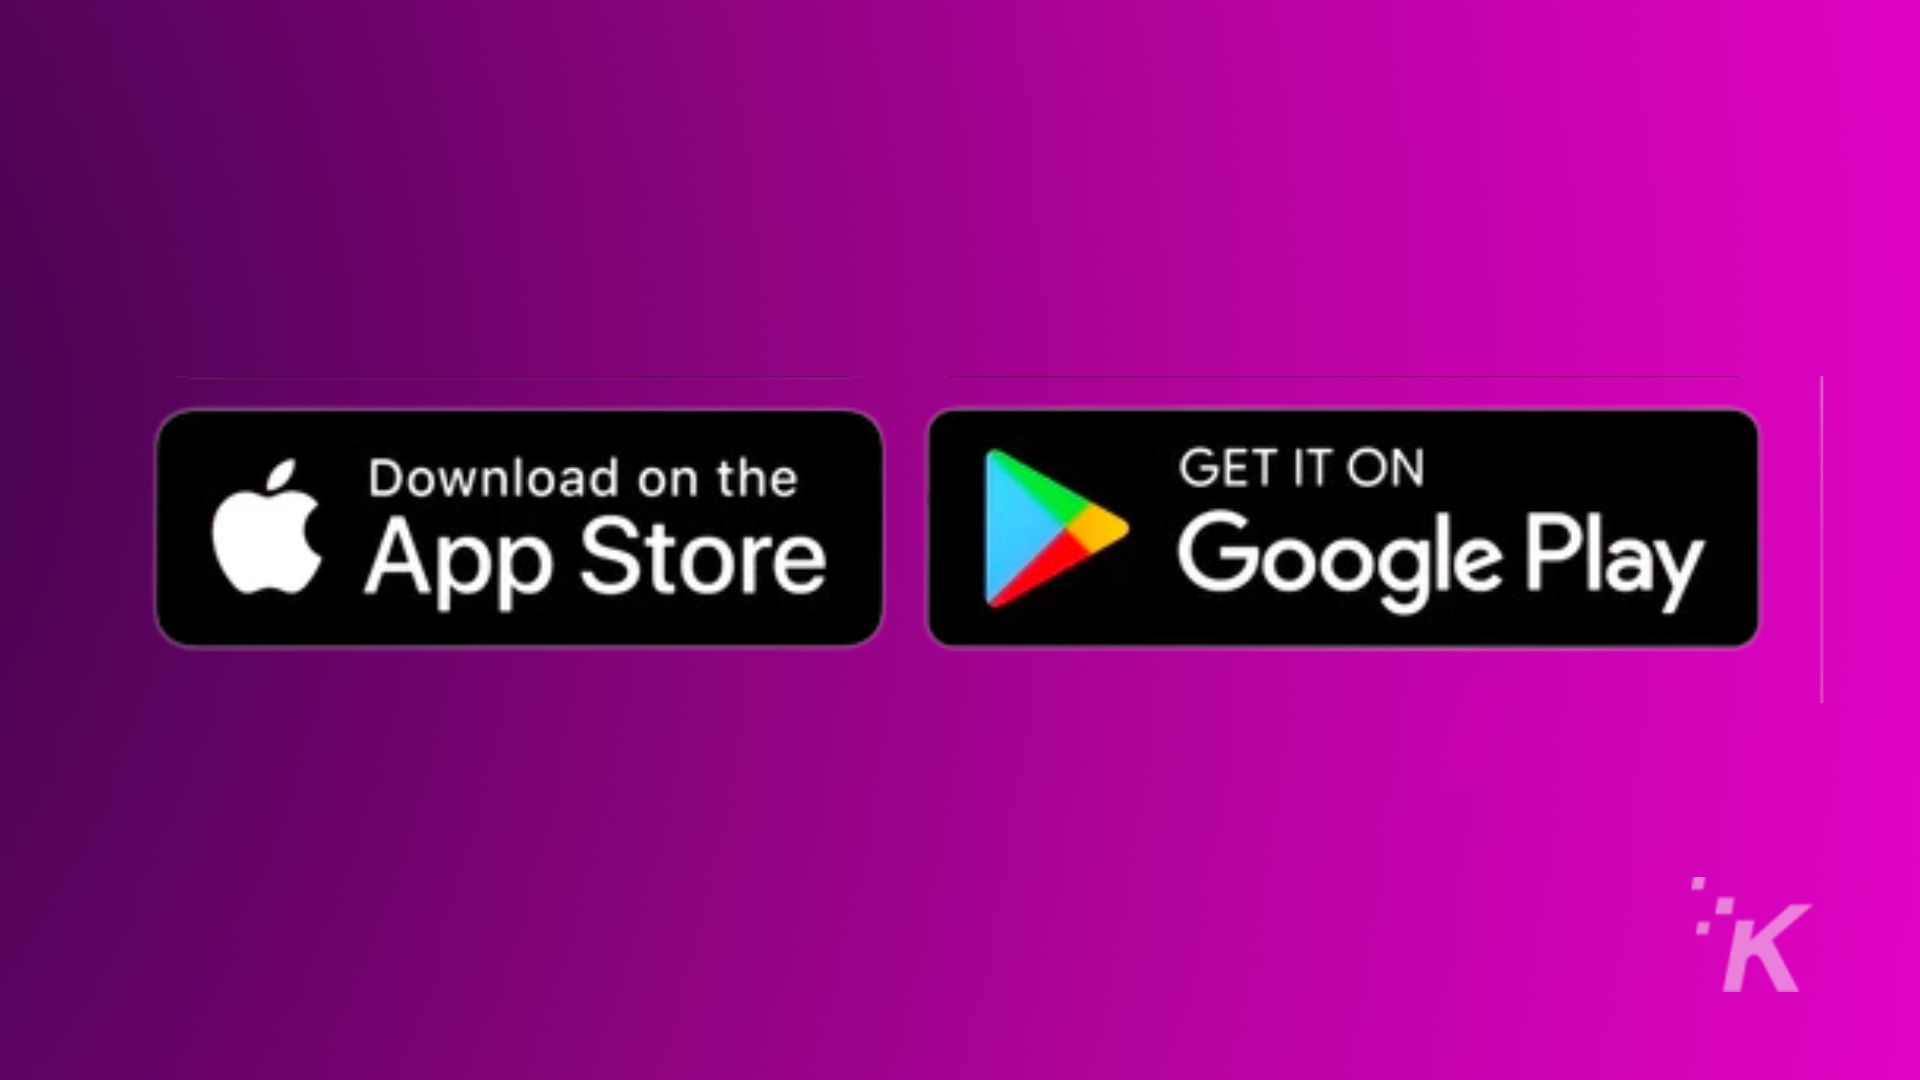 รูปภาพกำลังโปรโมตการวางจำหน่ายผลิตภัณฑ์ใน App Store และ Google Play ข้อความแบบเต็ม: ดาวน์โหลดบน GET IT ON App Store Google Play IK